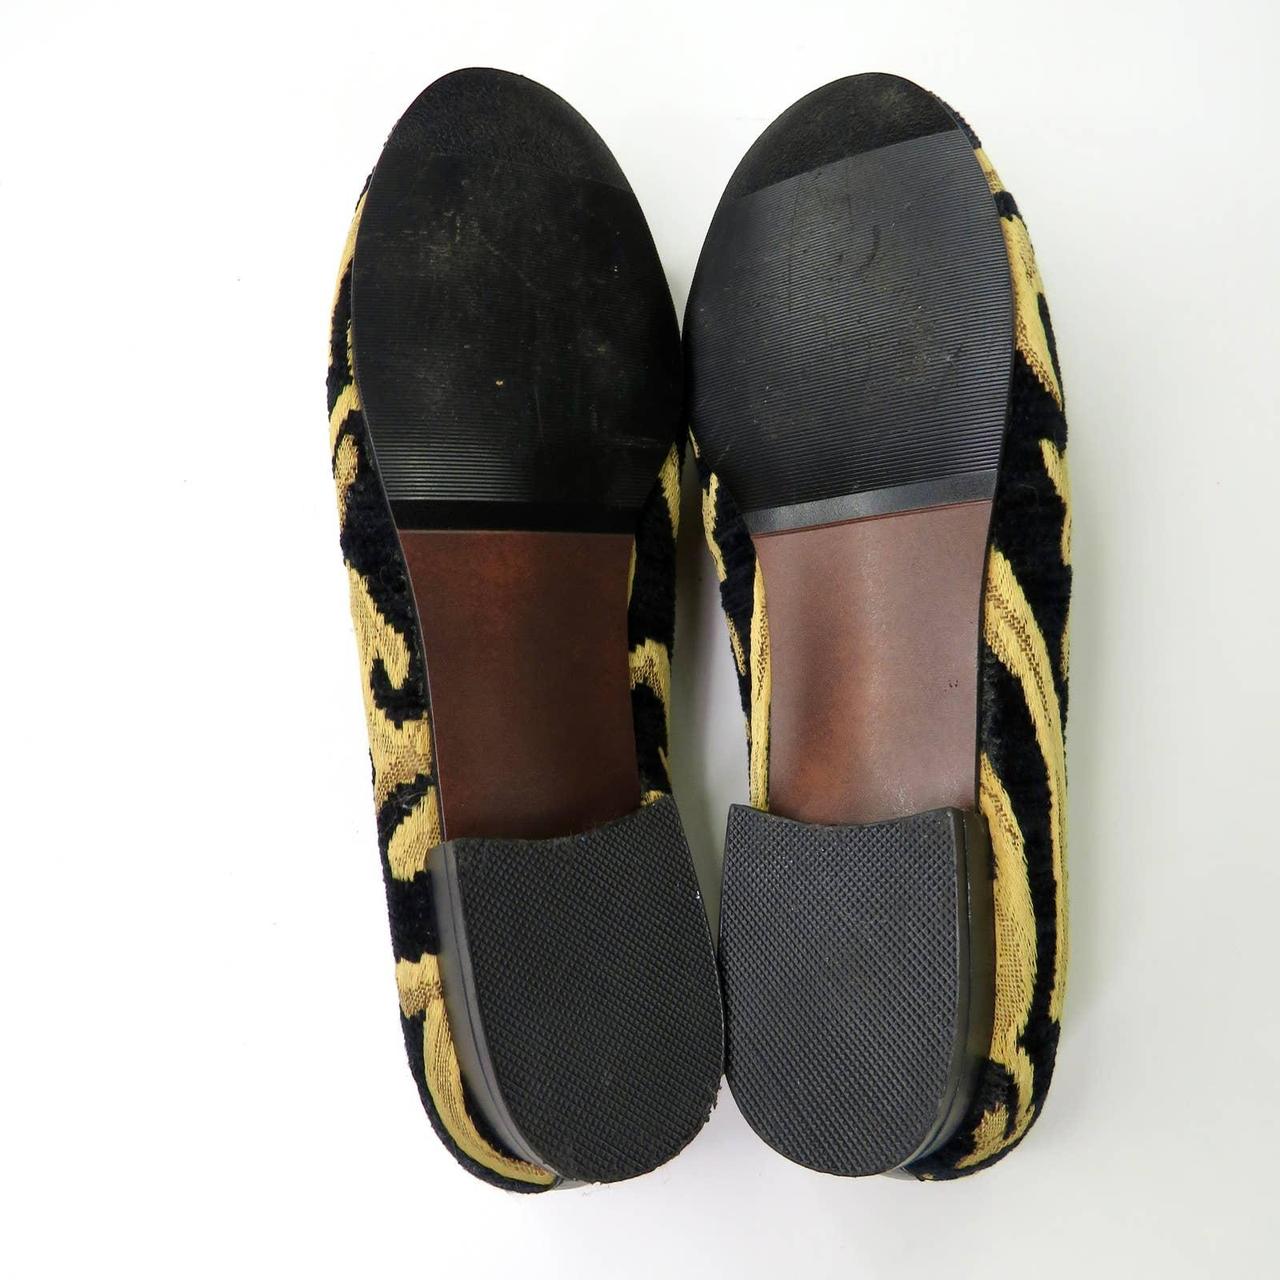 1990s Vintage Loafers. Appleseed Loafers. Black... - Depop